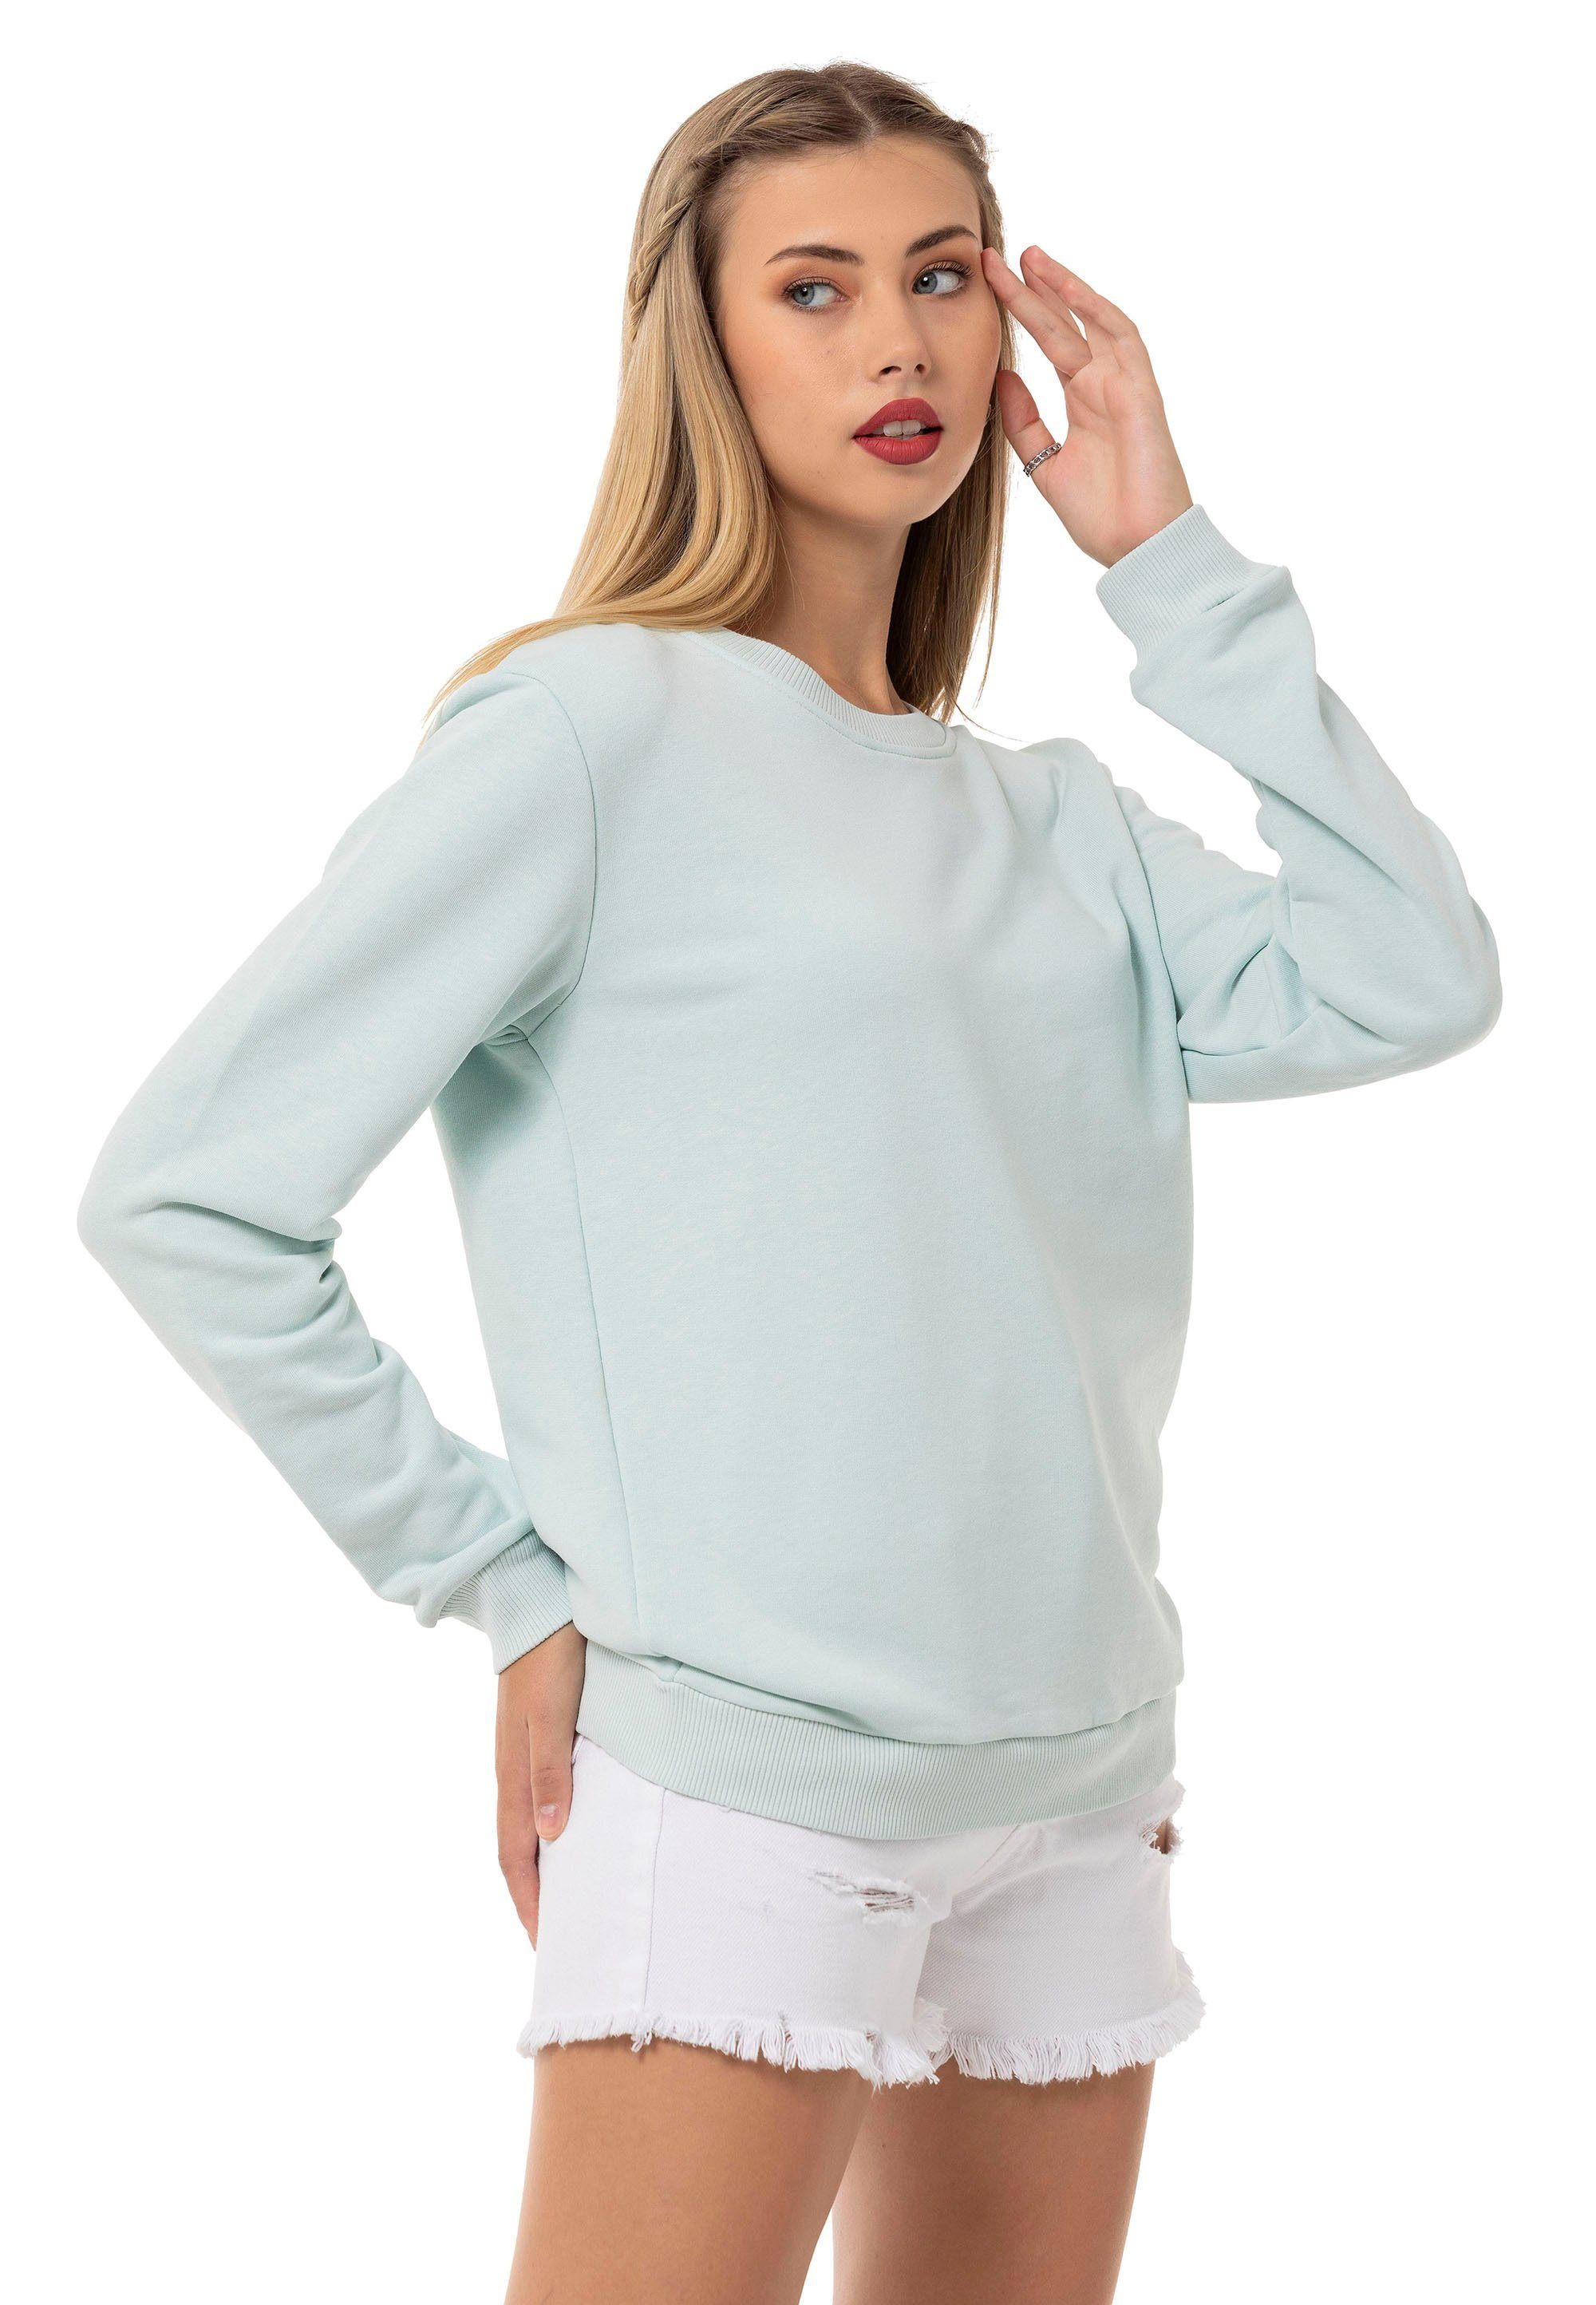 Pullover Sweatshirt Qualität Mint Premium RedBridge Rundhals